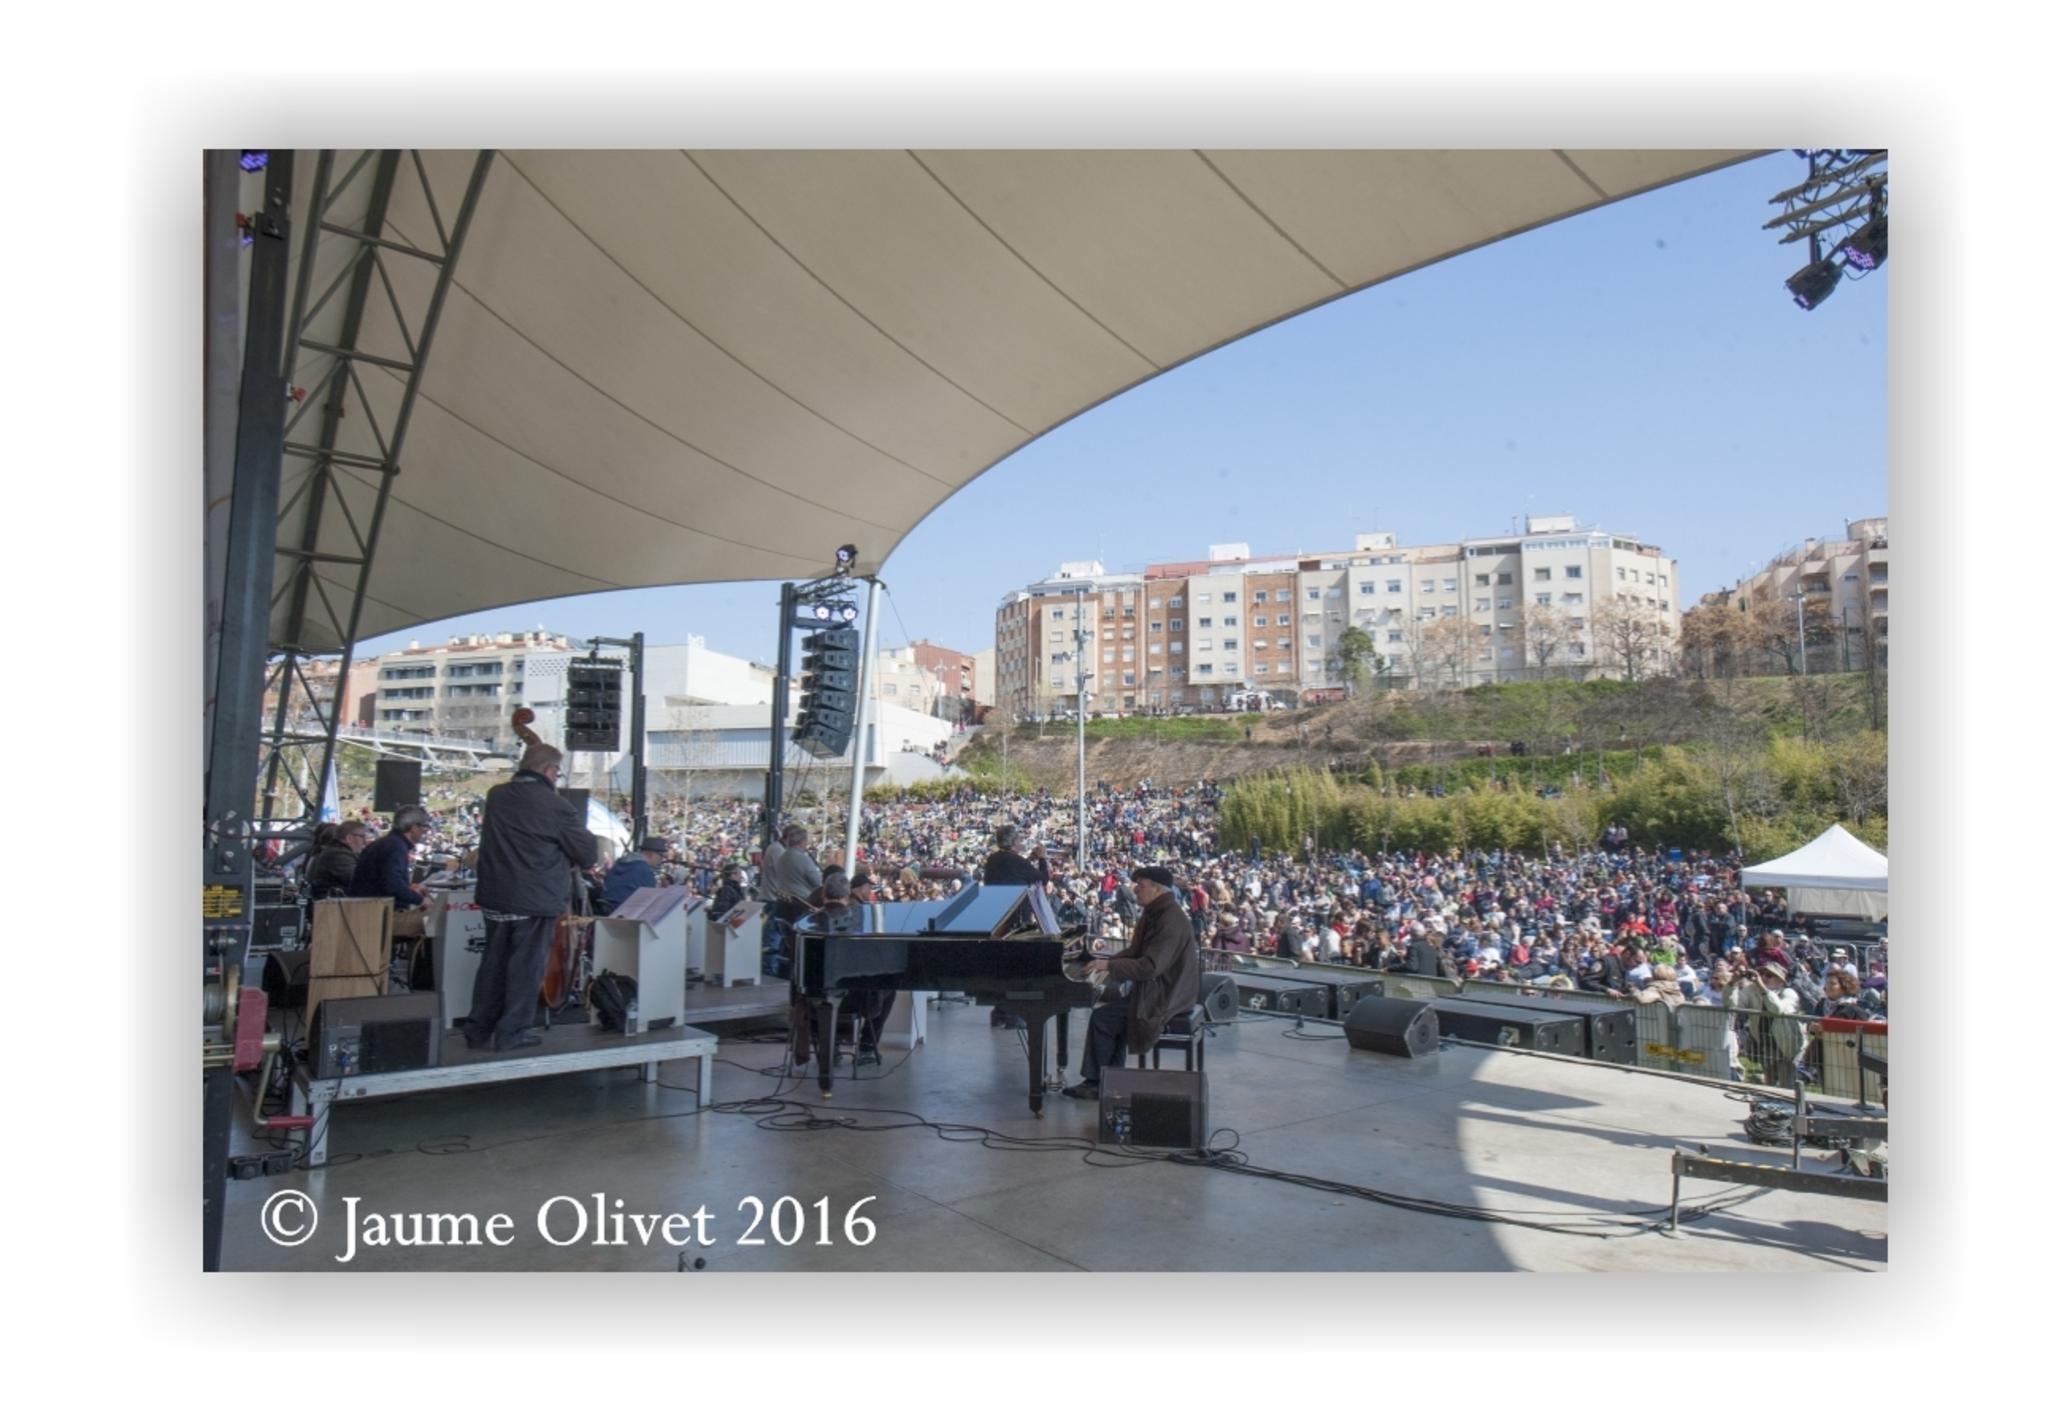  Jaume Olivet 2016